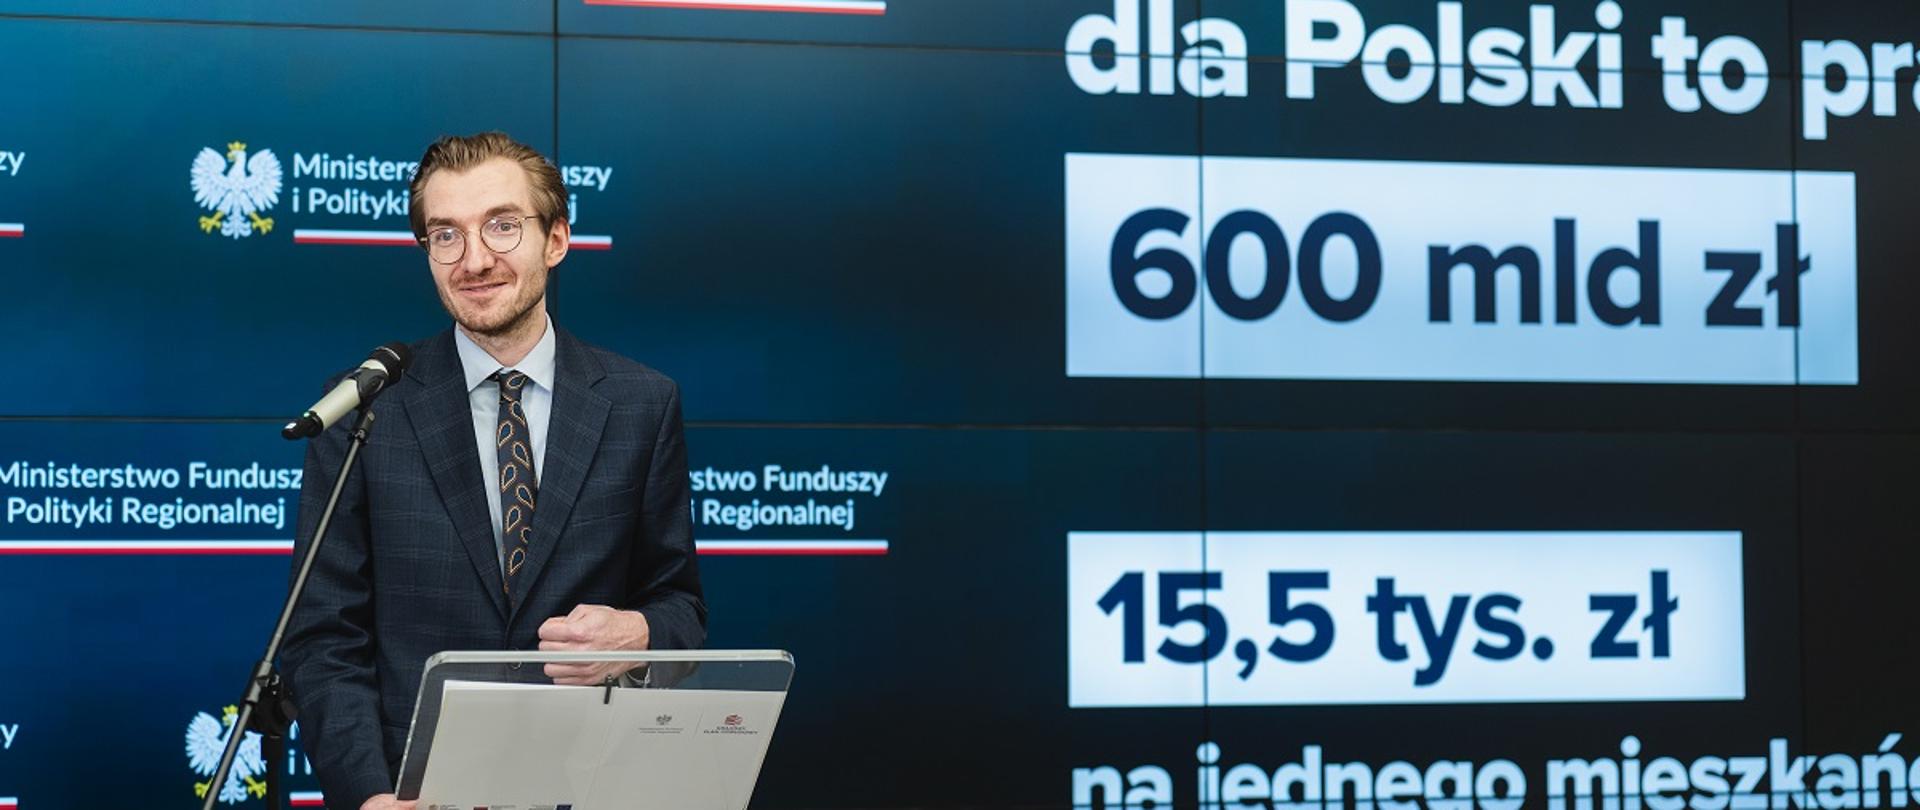 Wiceminister funduszy i polityki regionalnej Jan Szyszko na konferencji prasowej w MFiPR, za plecami wiceministra grafika informująca o 600 mld zł z Funduszy Europejskich dla Polski 